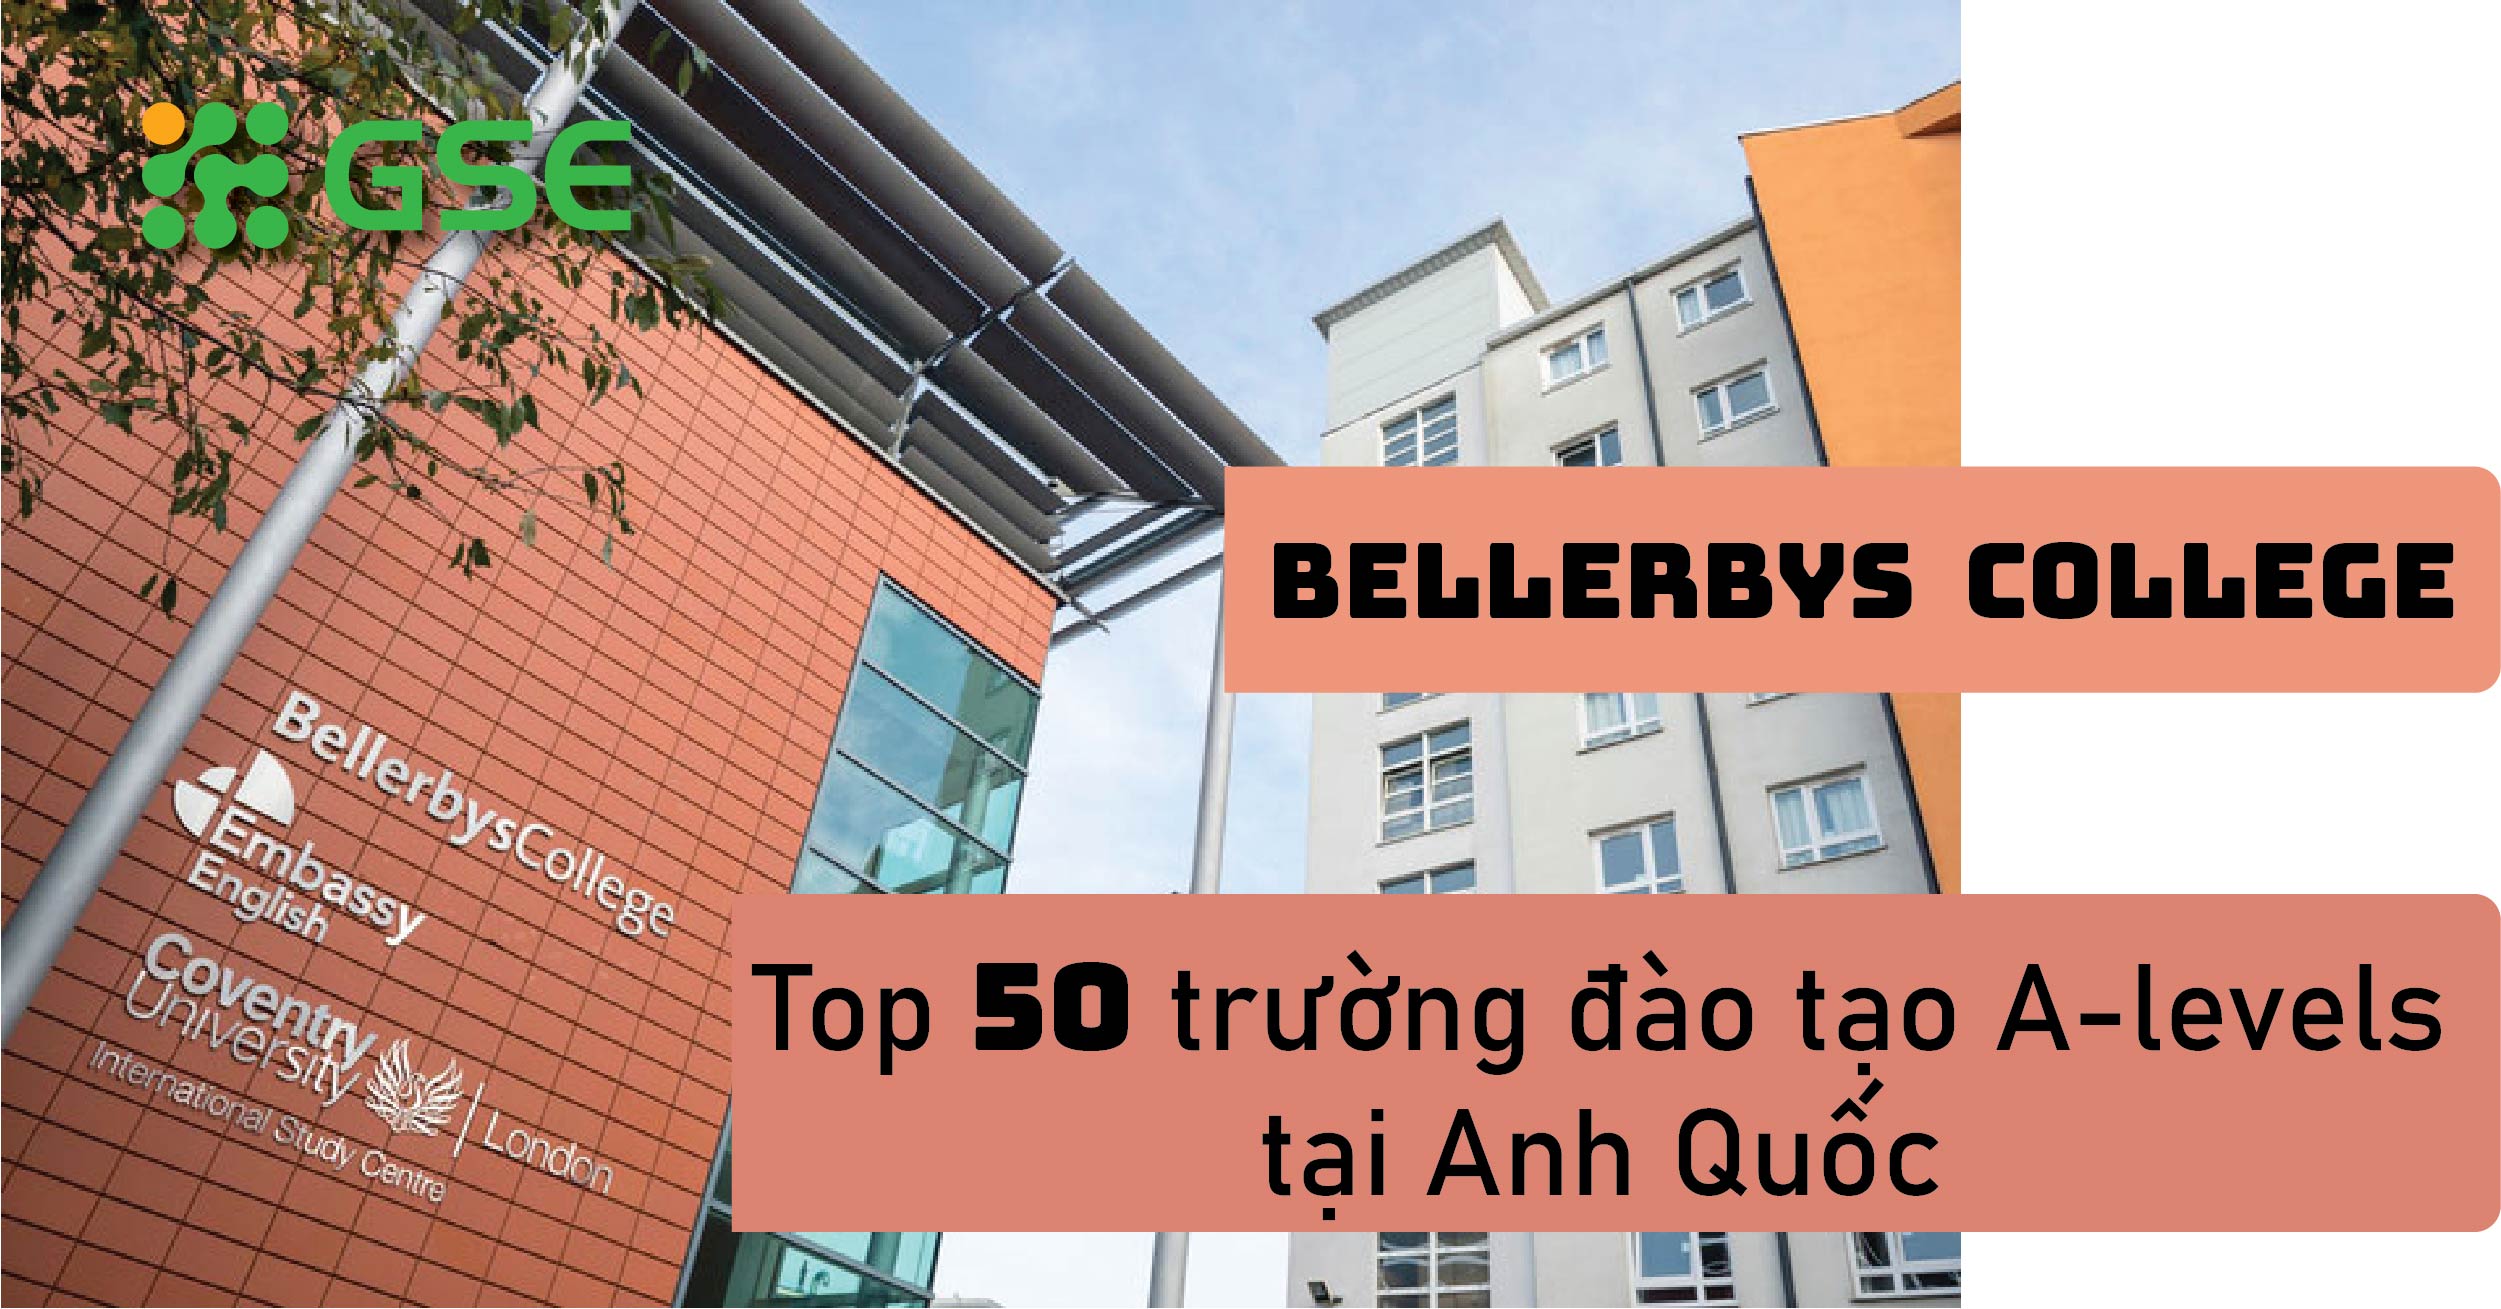 Bellerbys College – TOP 50 trường đào tạo A-Levels tại Anh Quốc